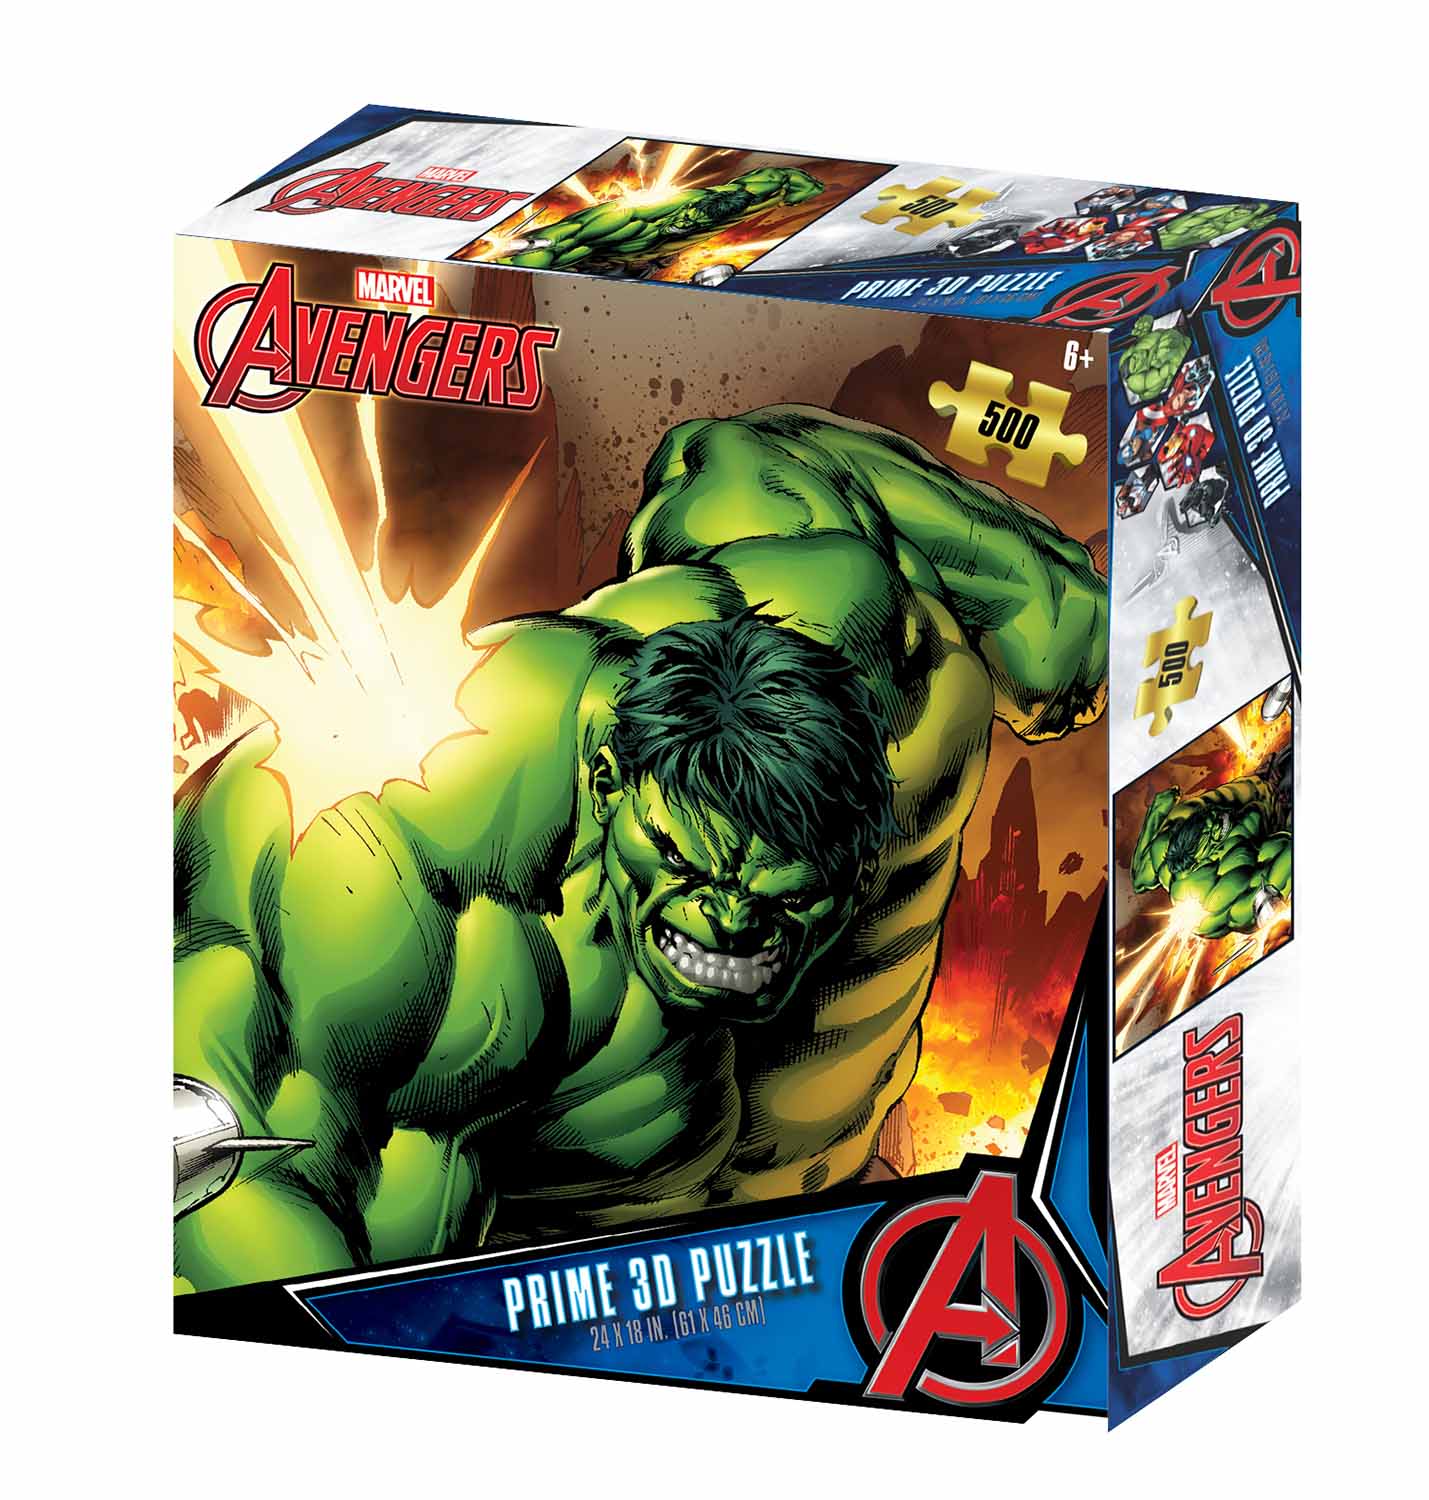 Avengers - The Hulk Marvel